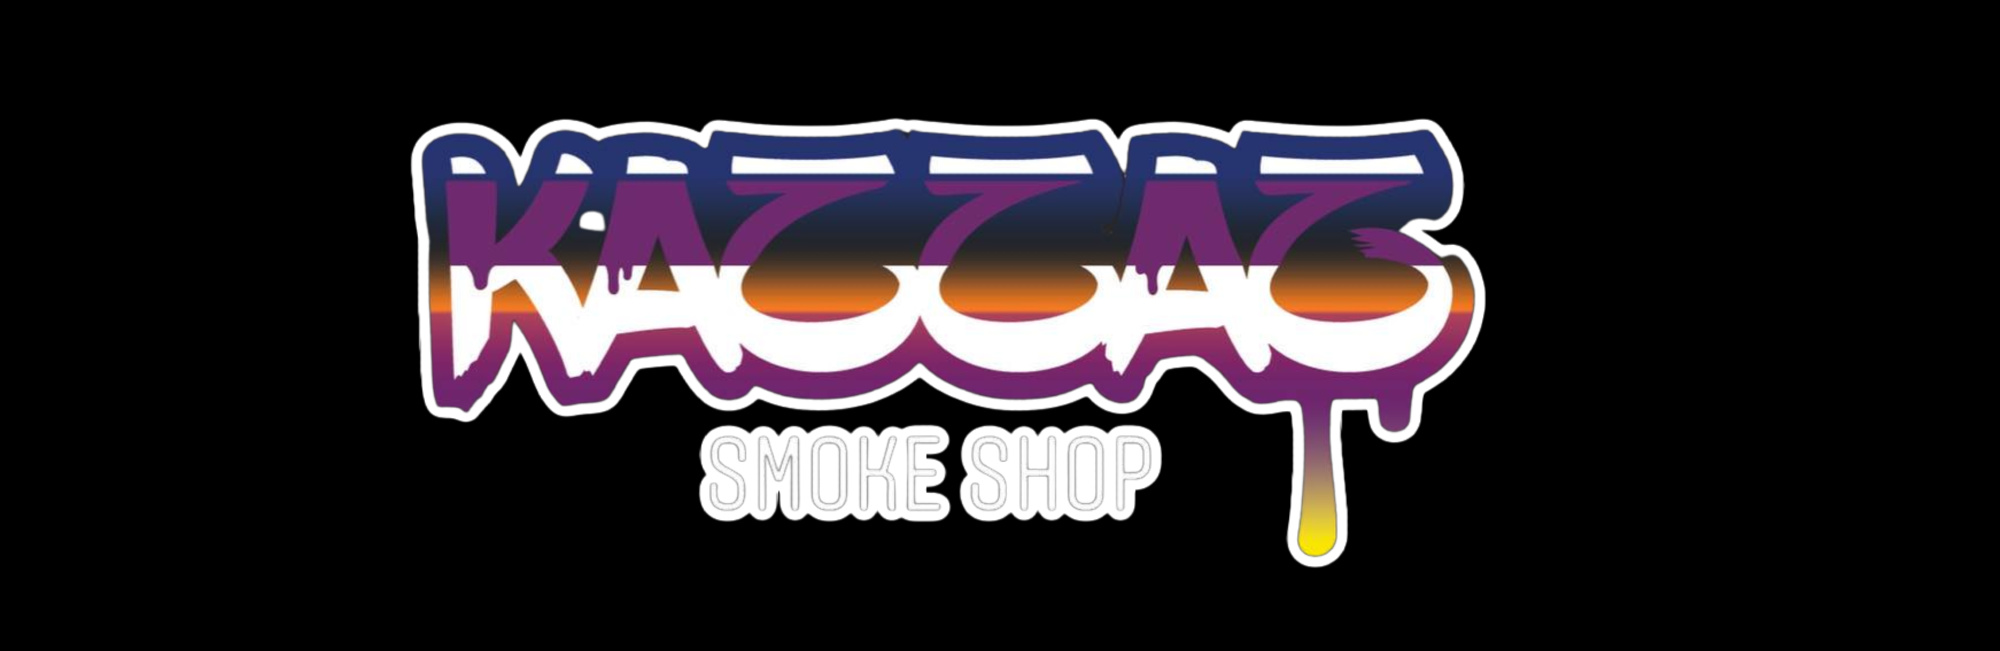 image of kazzaz smoke shop in chicago il